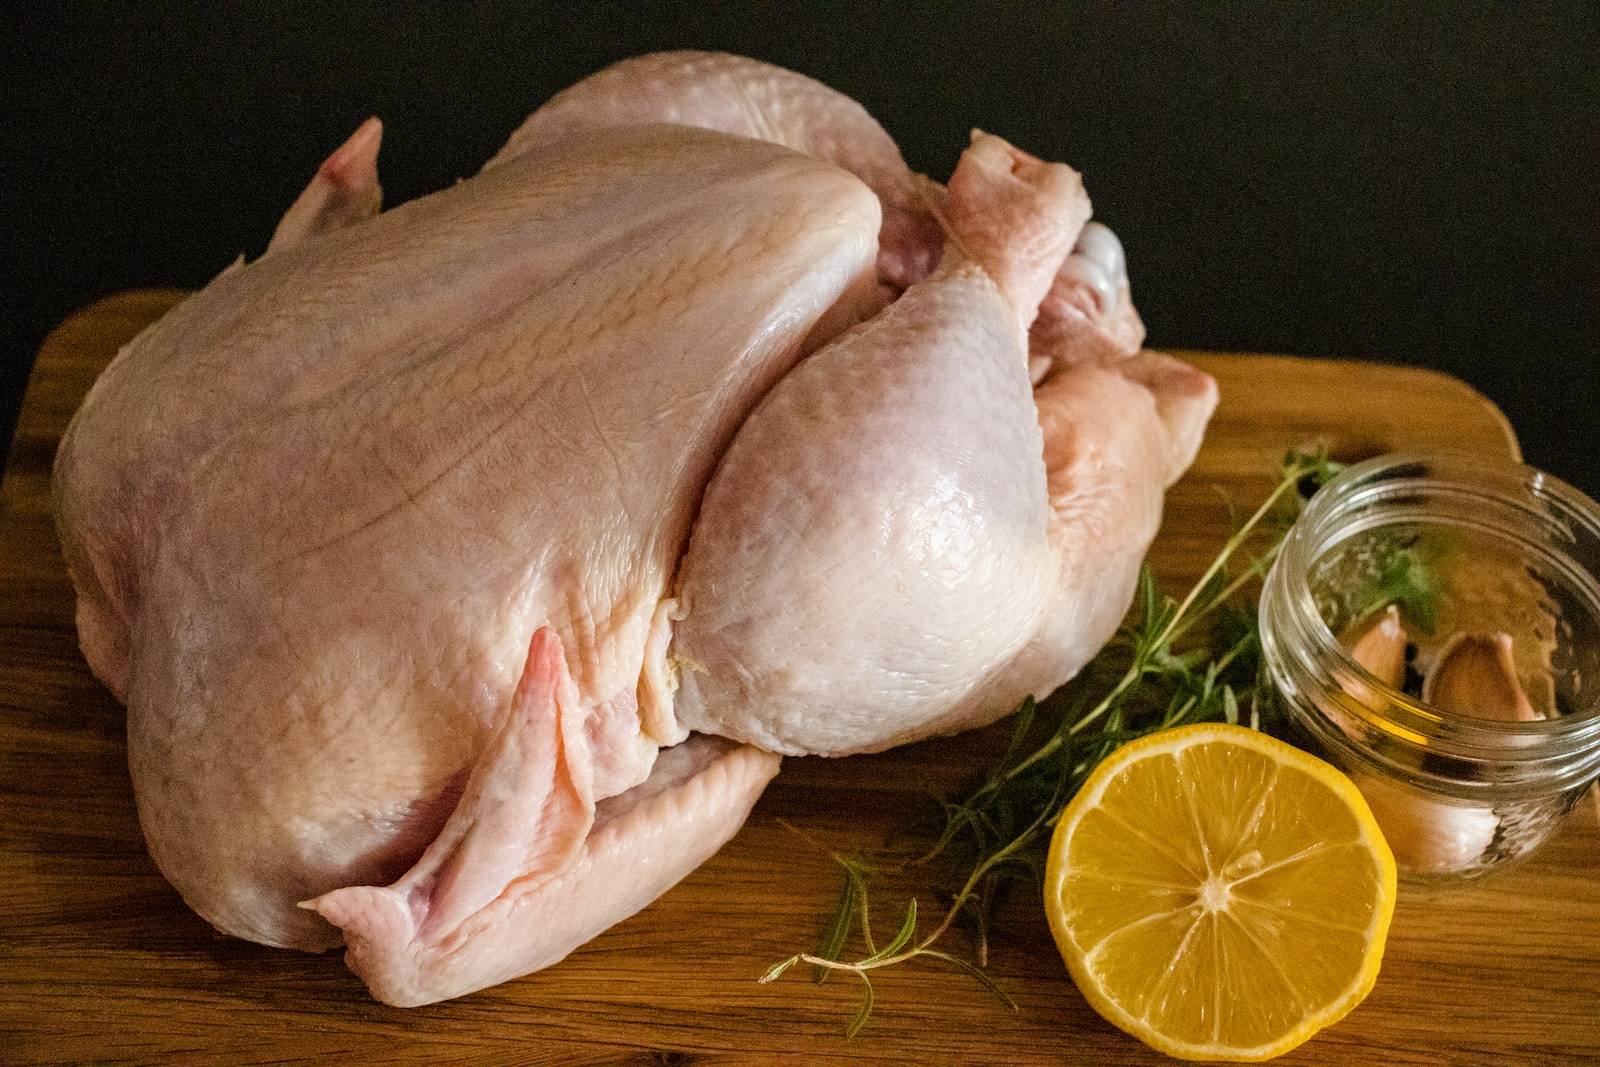 5 ข้อดีของเนื้อไก่และวิธีการเตรียมไก่อย่างปลอดภัยที่ควรรู้